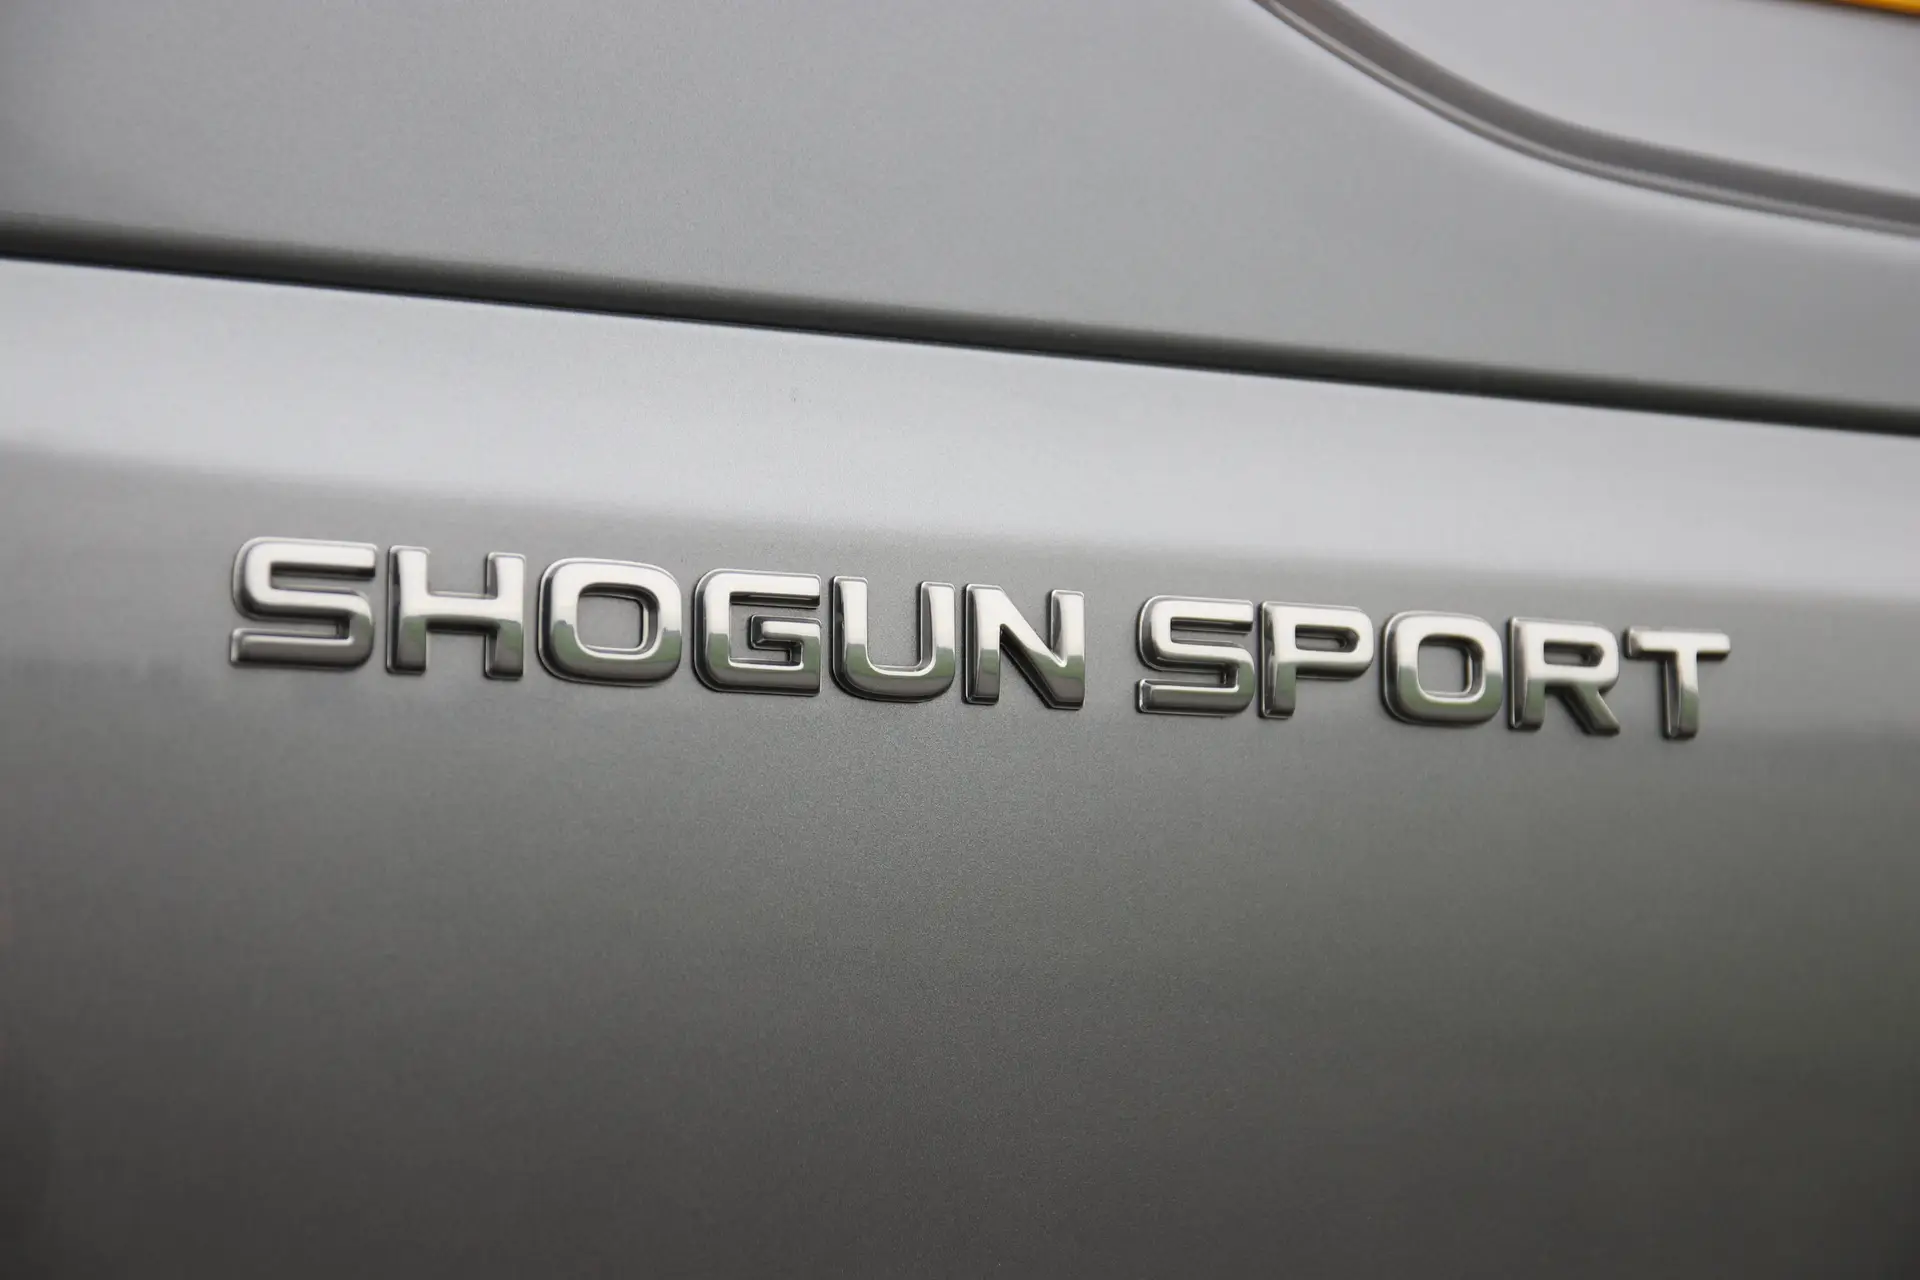 Mitsubishi Shogun Sport (2018-2021) Review: exterior close up photo of the Mitsubishi Shogun Sport badge